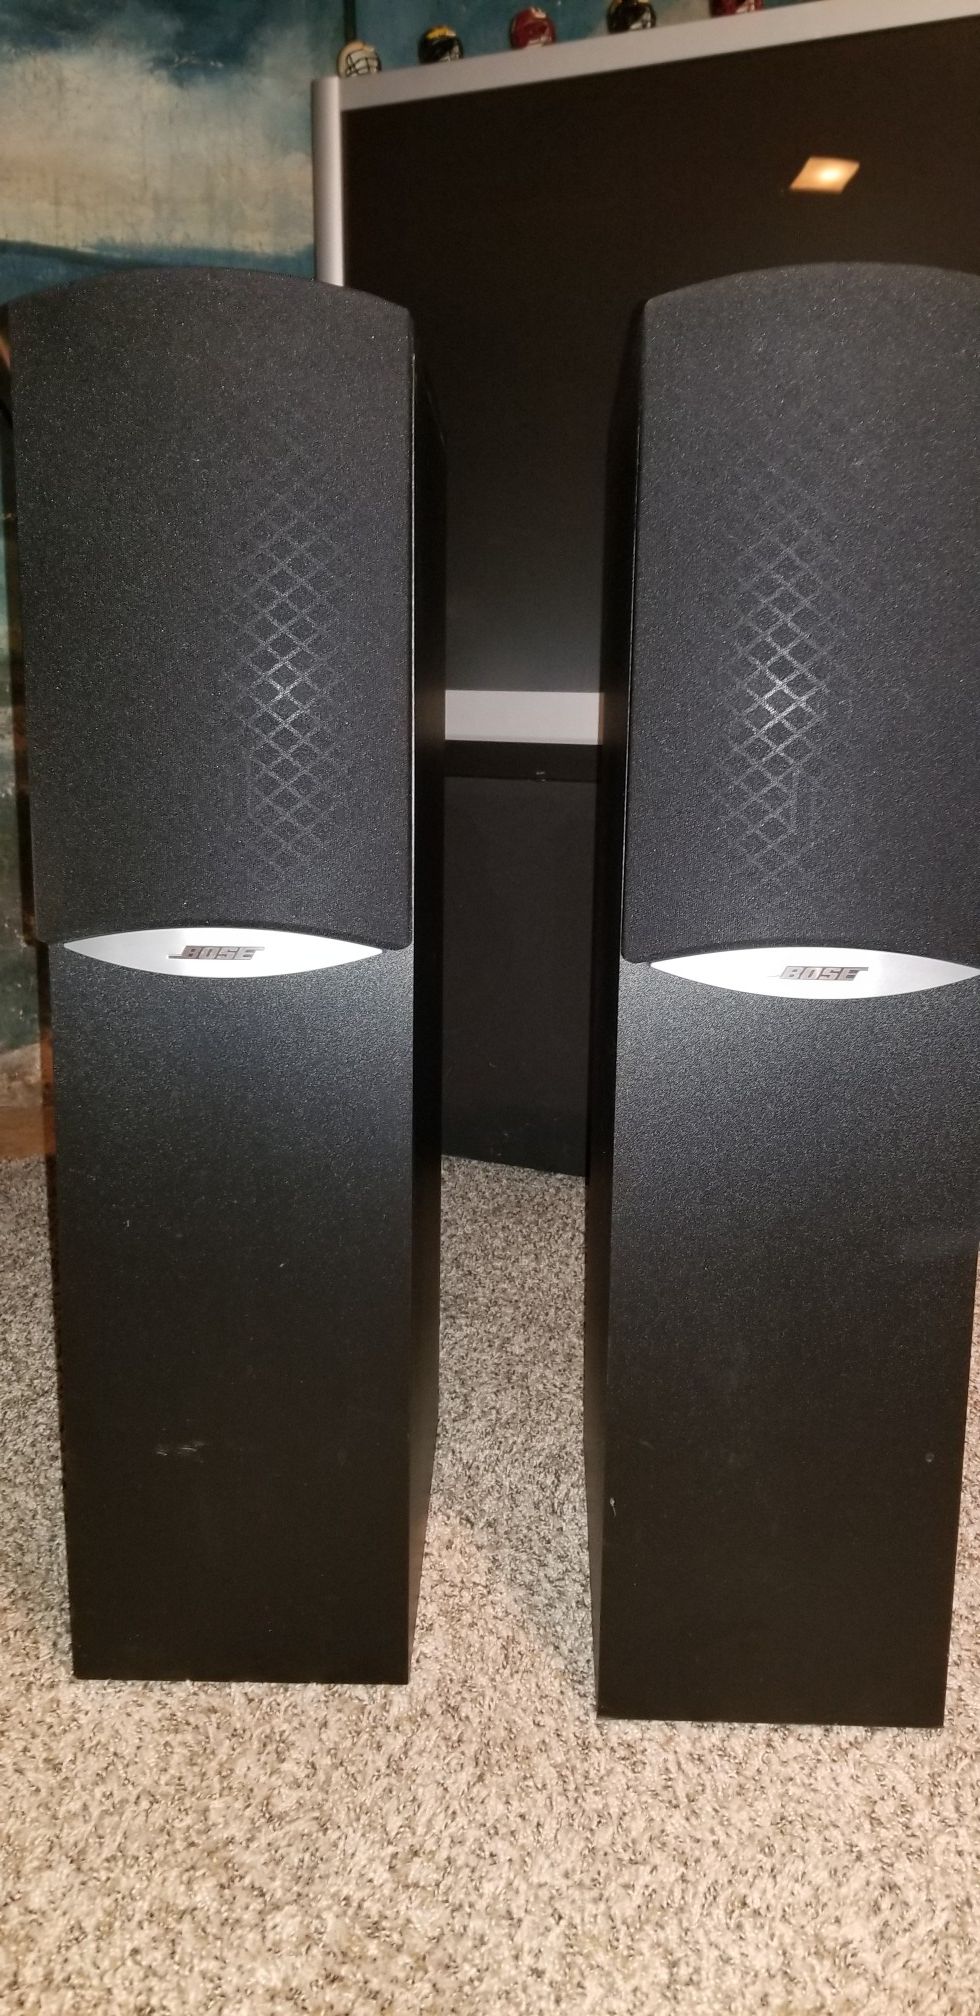 Bose 601 tower speakers